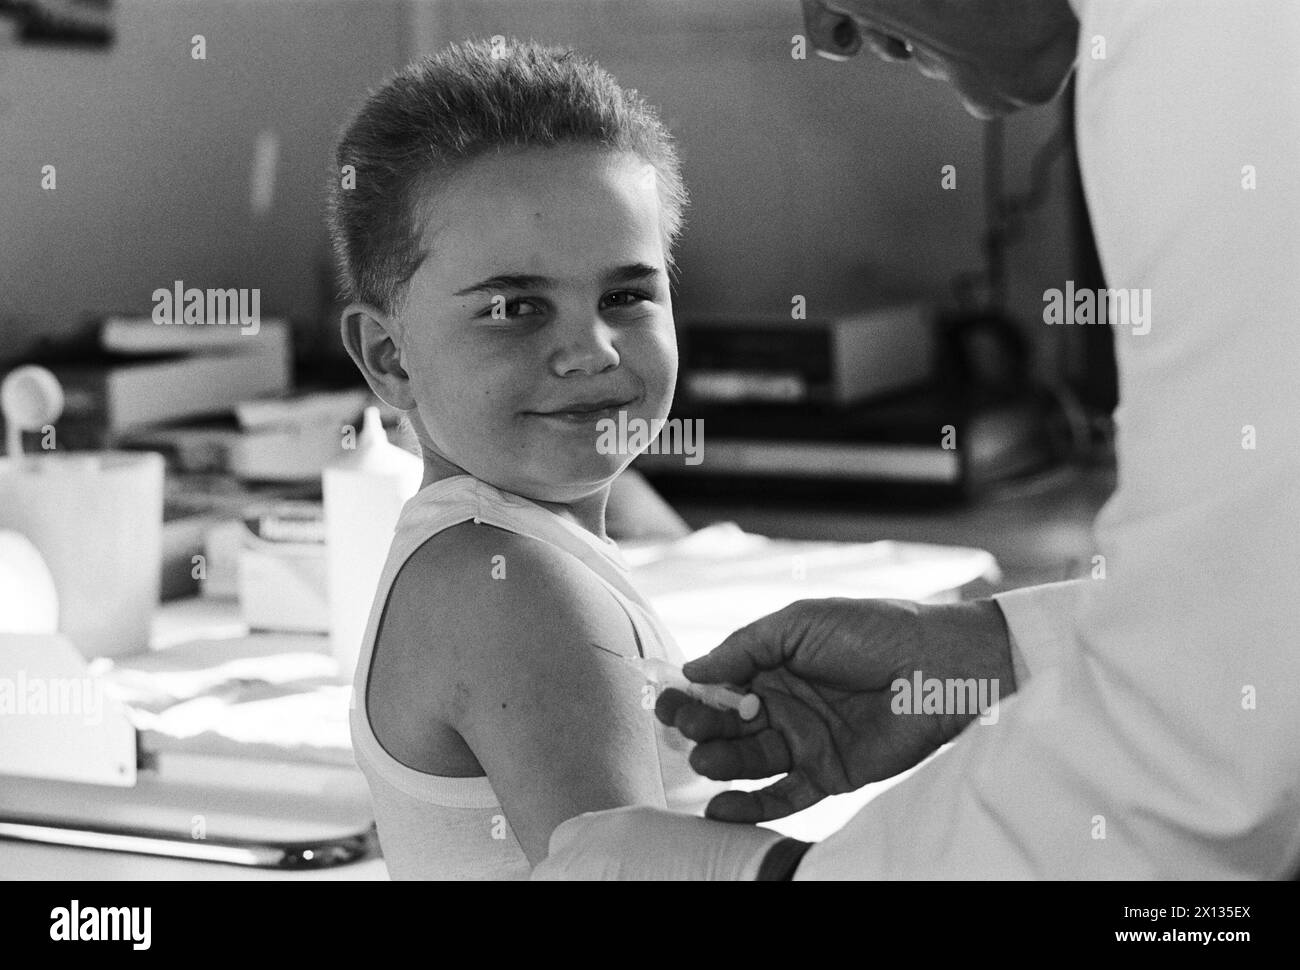 Wien am 15. März 1990: Der 6-jährige Thomas nimmt ohne Protest eine Infusion gegen das gefährliche FSME-Virus an. Seit Beginn einer Immunisierungsoffensive im Jahr 1981 sind die Krankheitsfälle radikal zurückgegangen. - 19900315 PD0007 - Rechteinfo: Rechte verwaltet (RM) Stockfoto